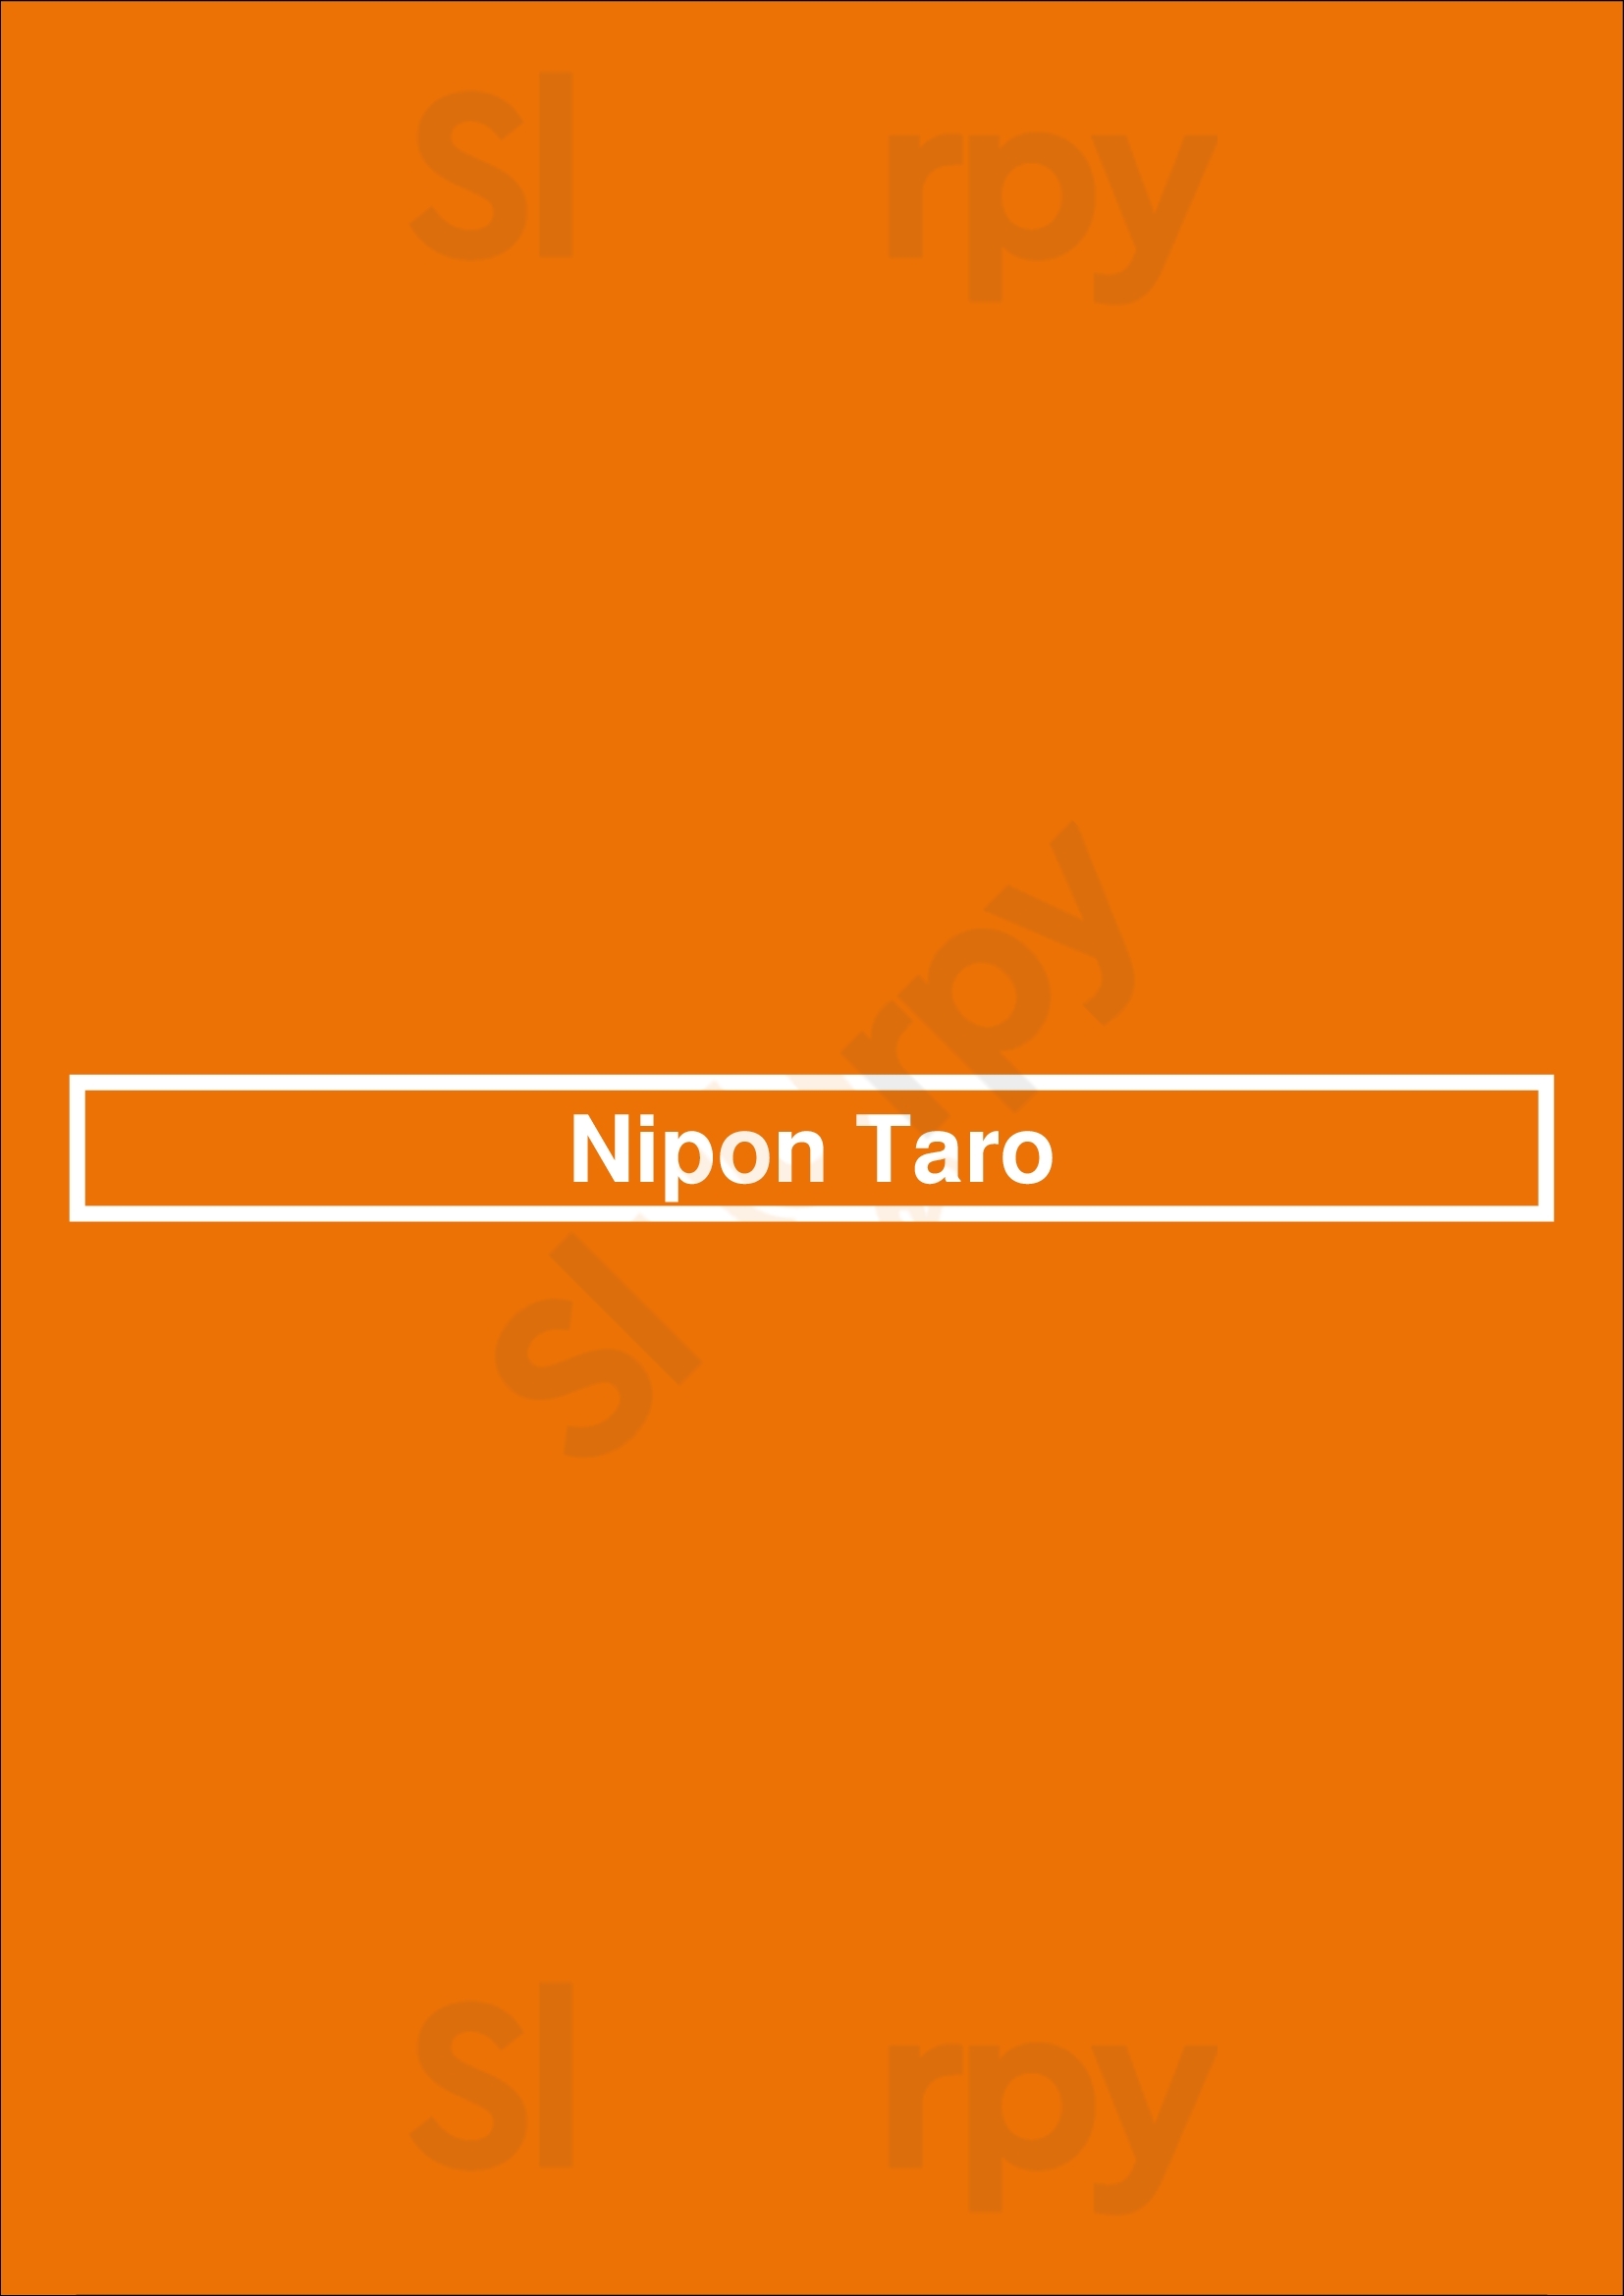 Nipon Taro Madrid Menu - 1